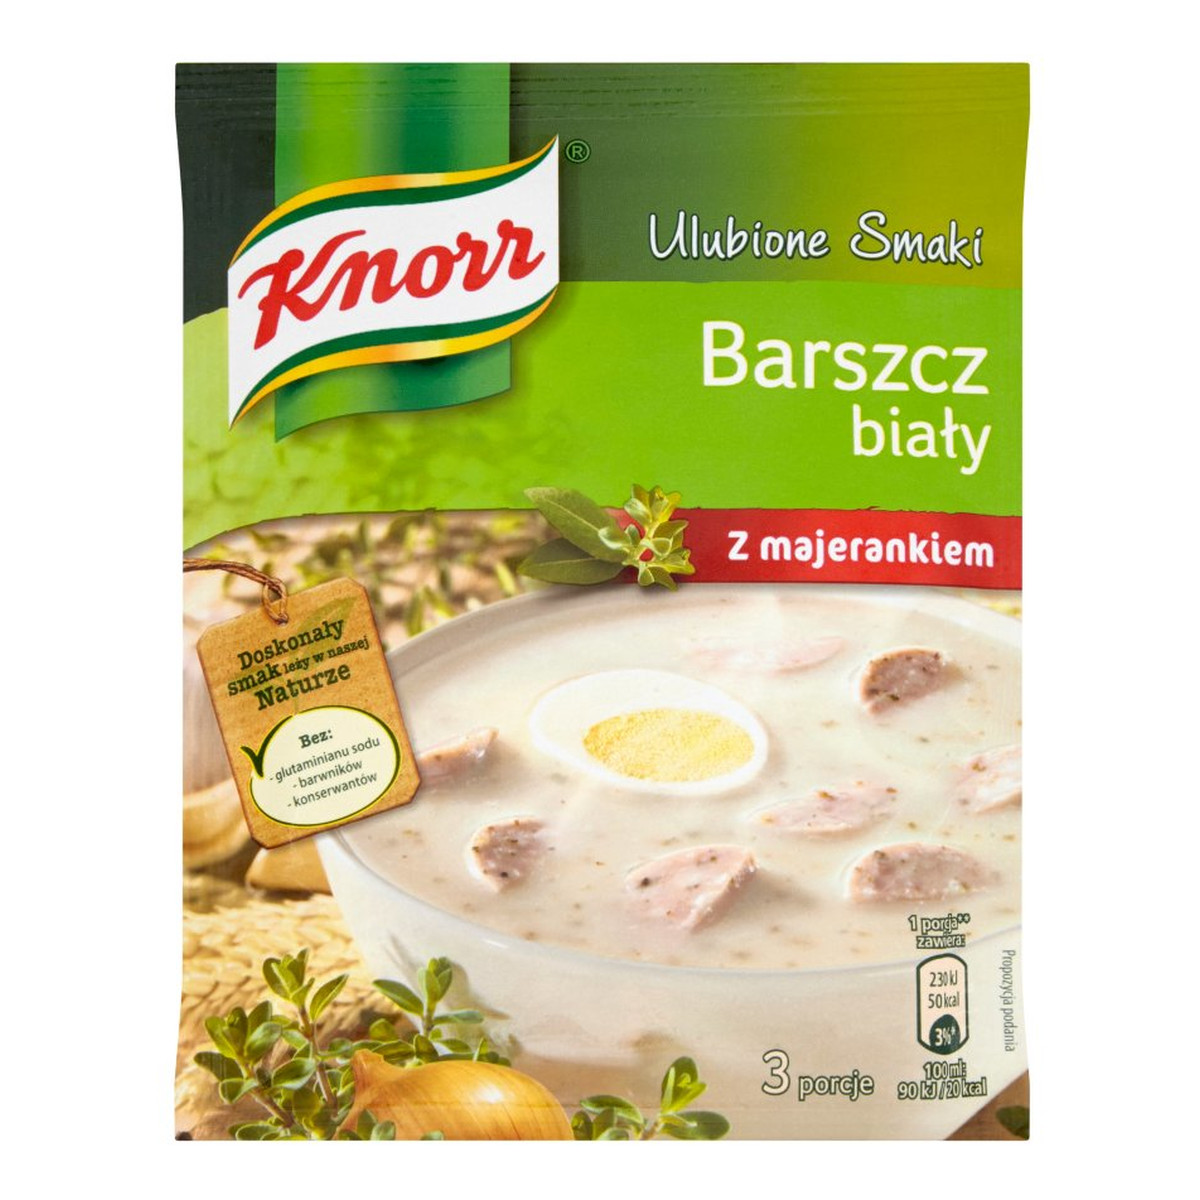 Knorr Ulubione Smaki Barszcz biały z majerankiem 47g